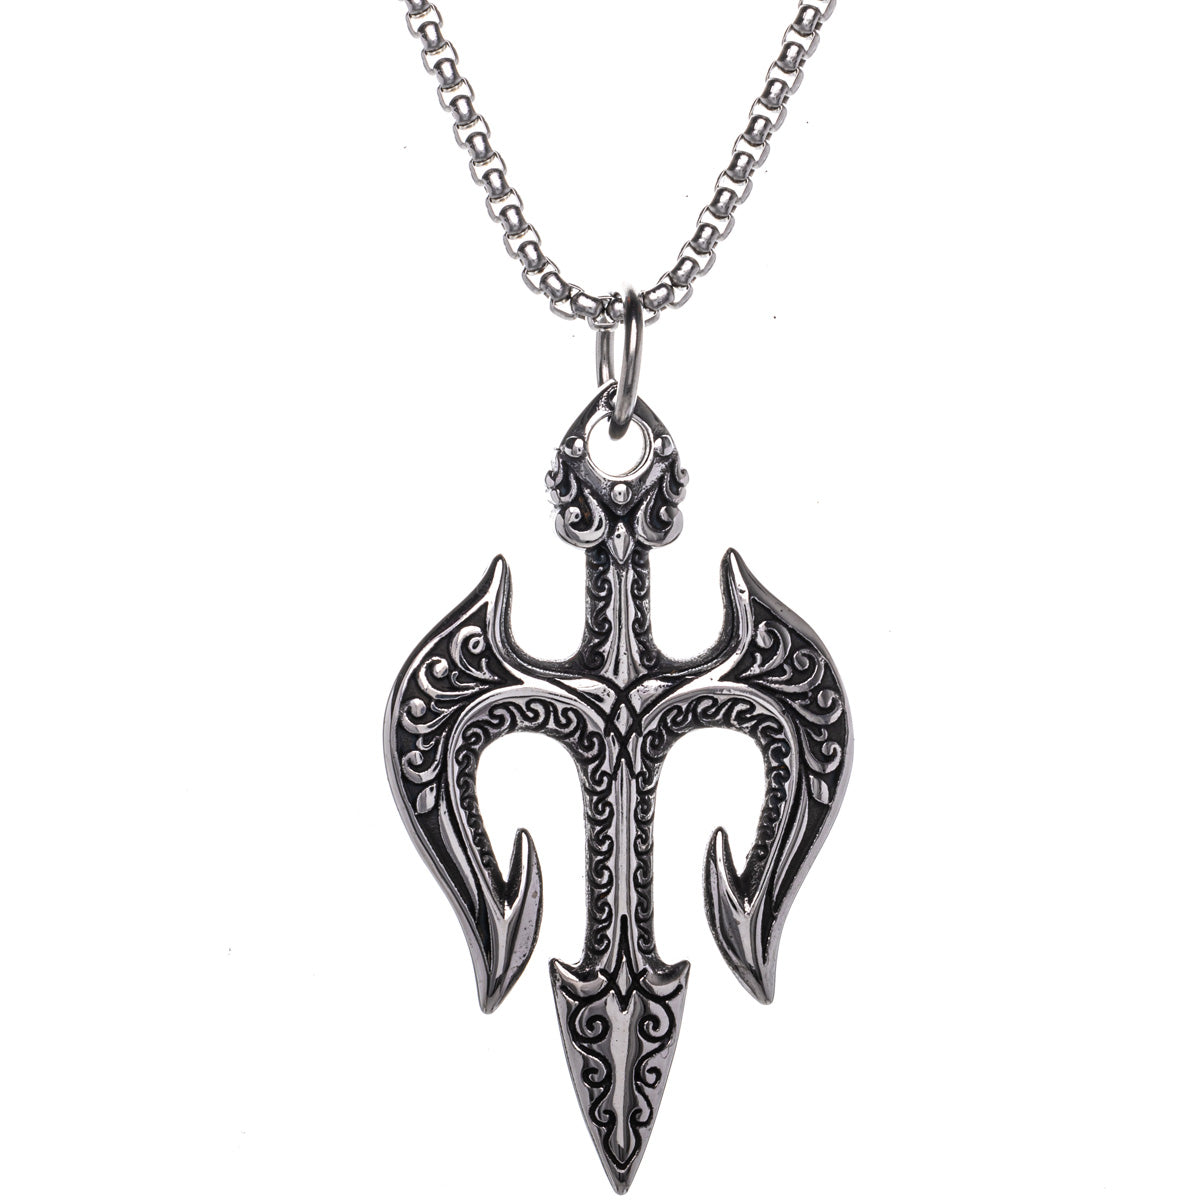 Atrain pendant necklace (Steel 316L)